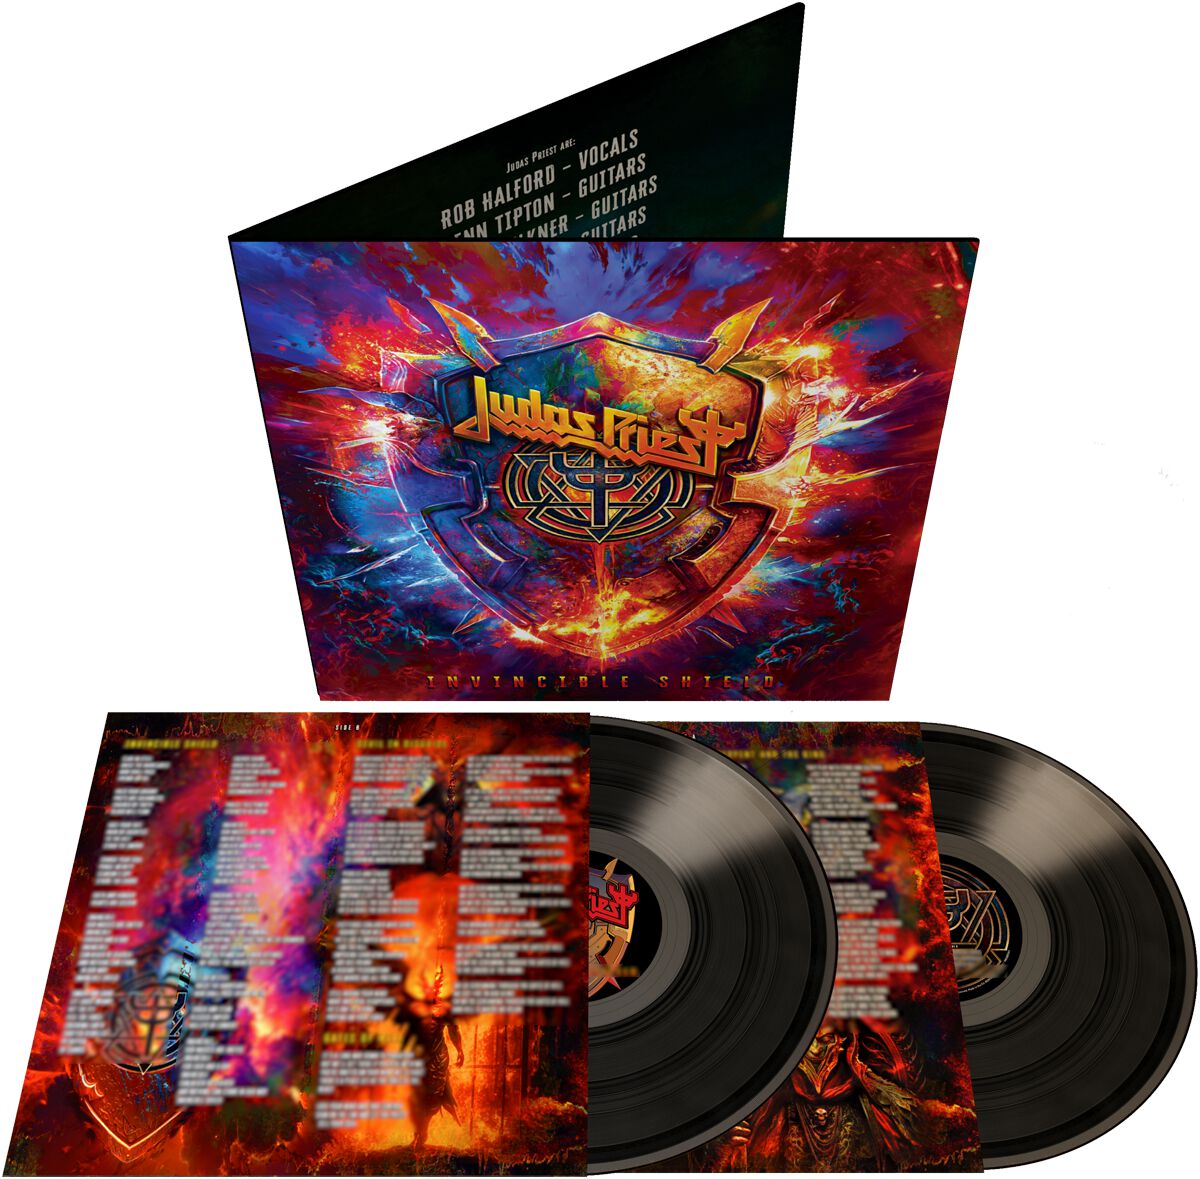 Judas Priest Invincible shield LP multicolor